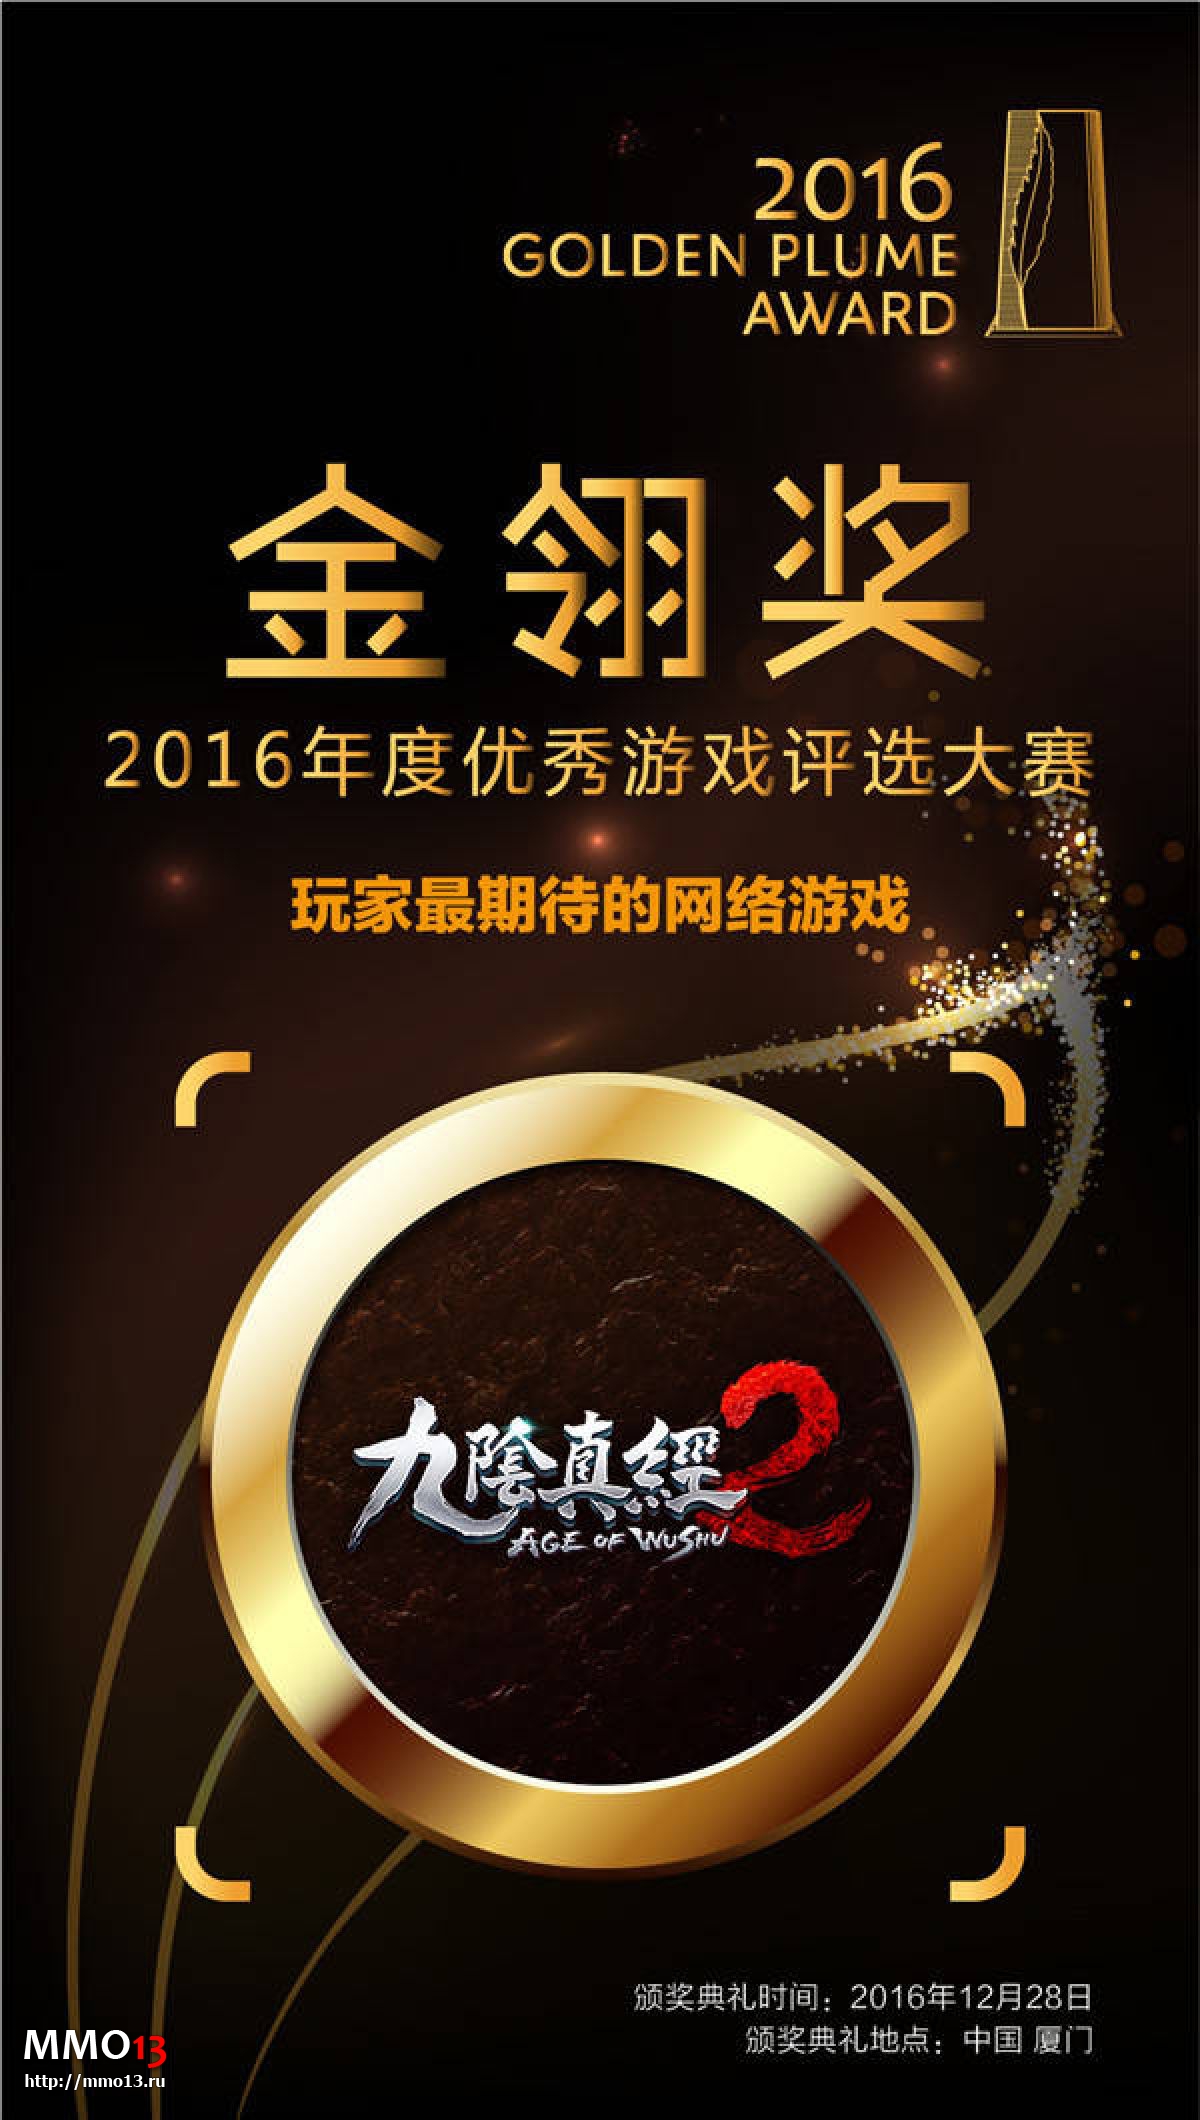 ​Age of Wushu 2 получила престижную китайскую премию Golden Plume Award 2016